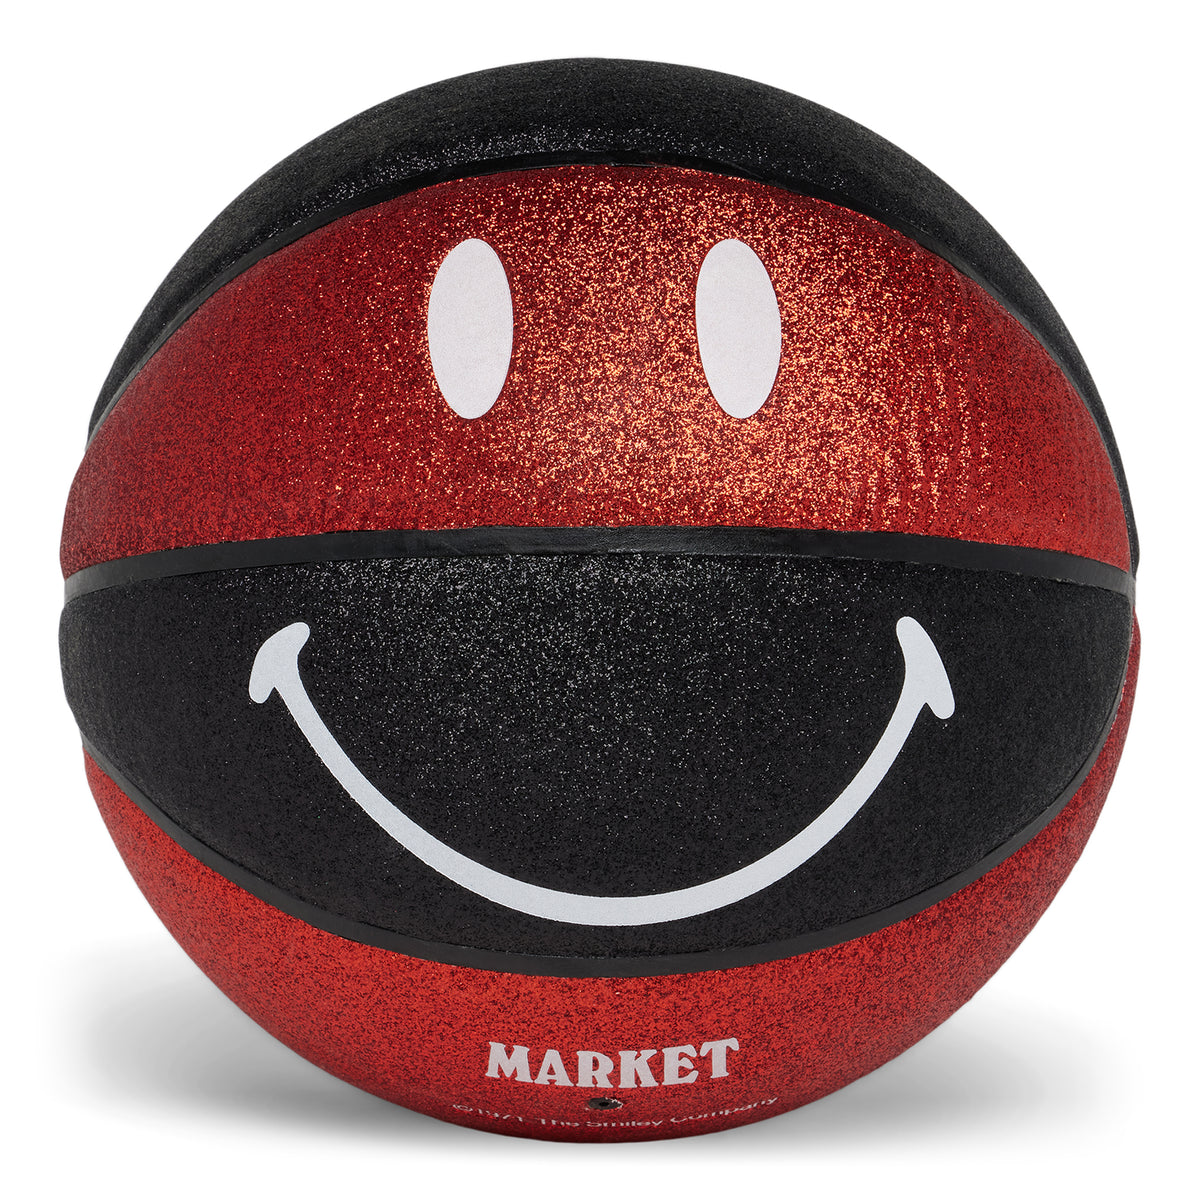 MARKET SMILEY GLITTER SHOWTIME BASKETBALL